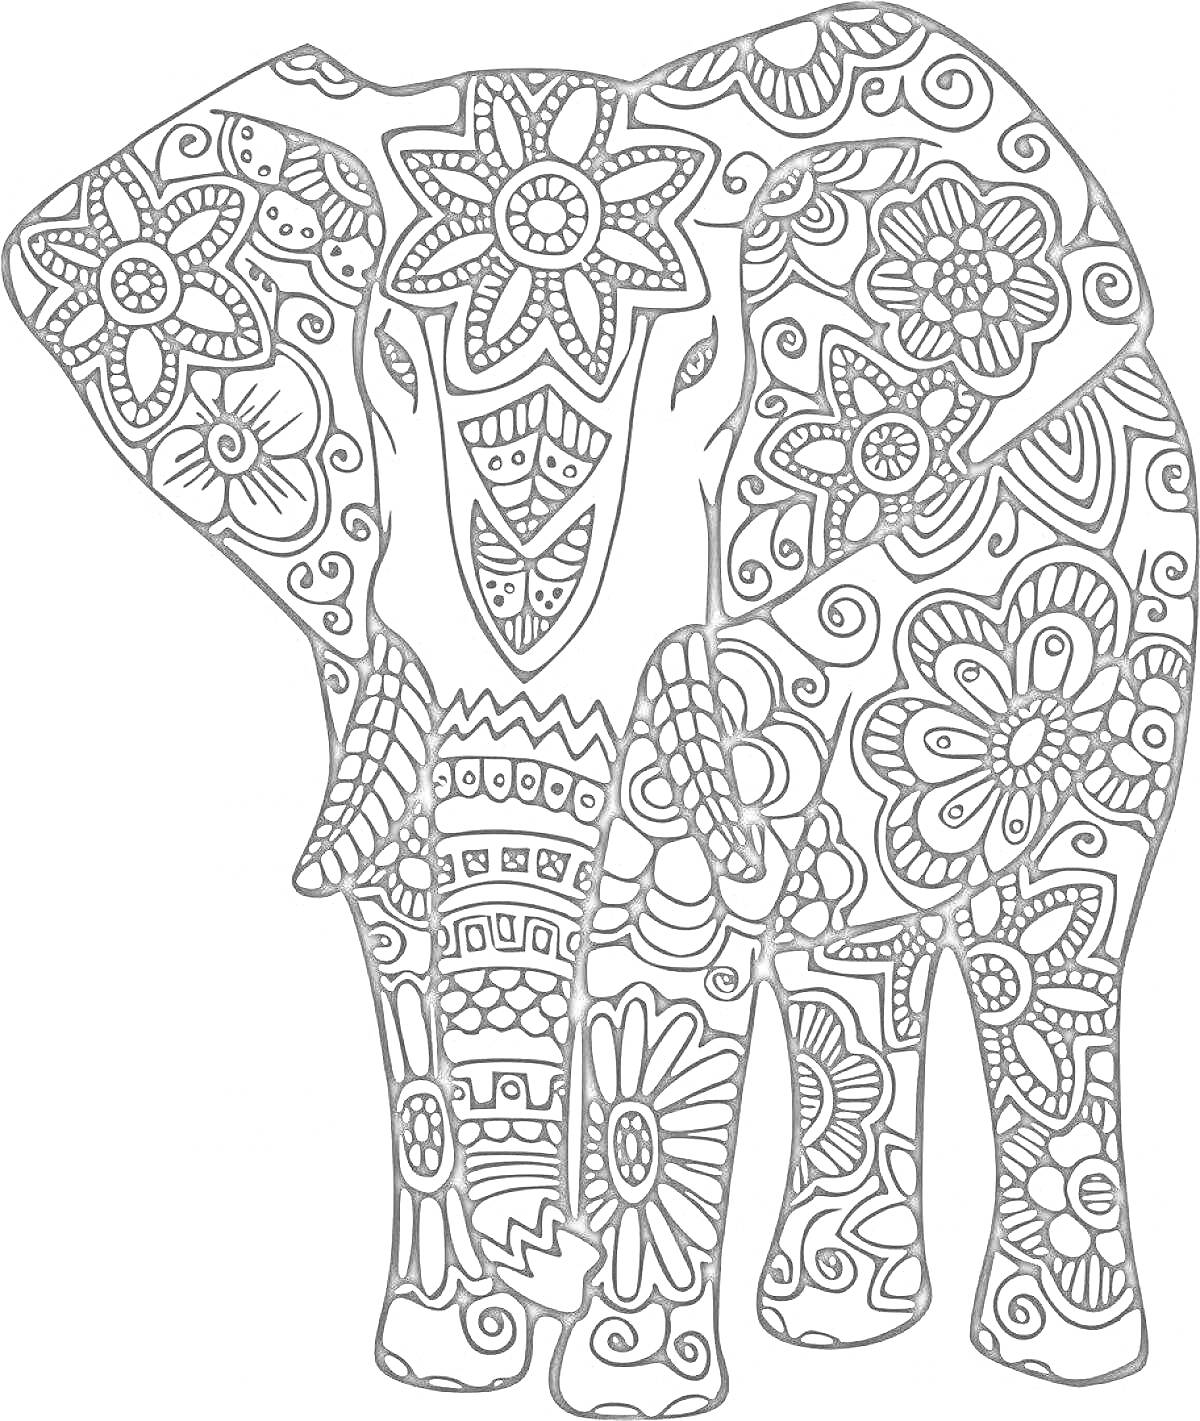 Раскраска Антистресс раскраска слона с цветами, узорами и завитками